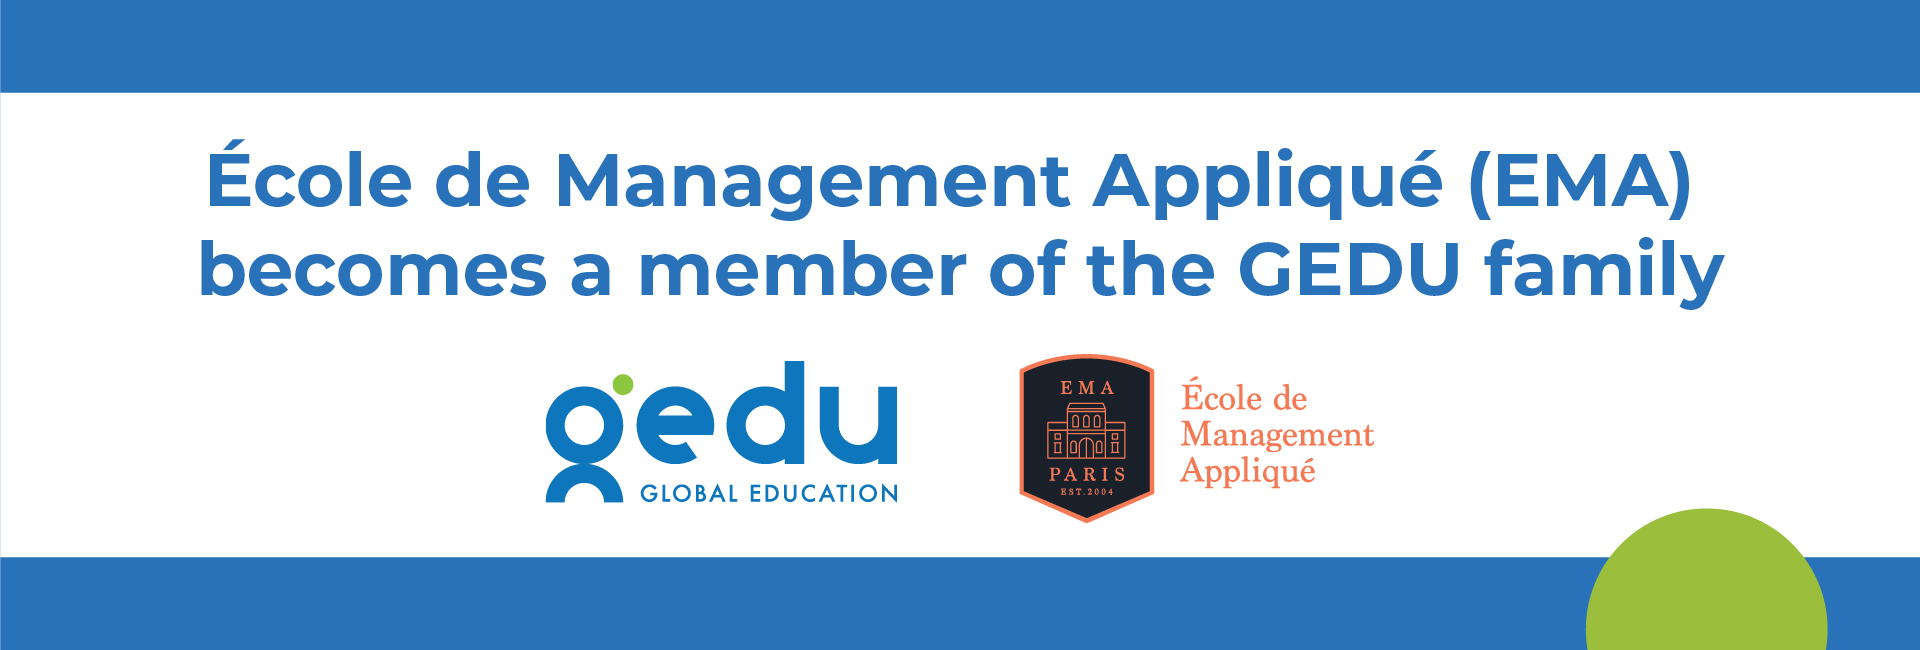 Global Education Holdings Acquires Paris-based École de Management Appliqué (EMA)